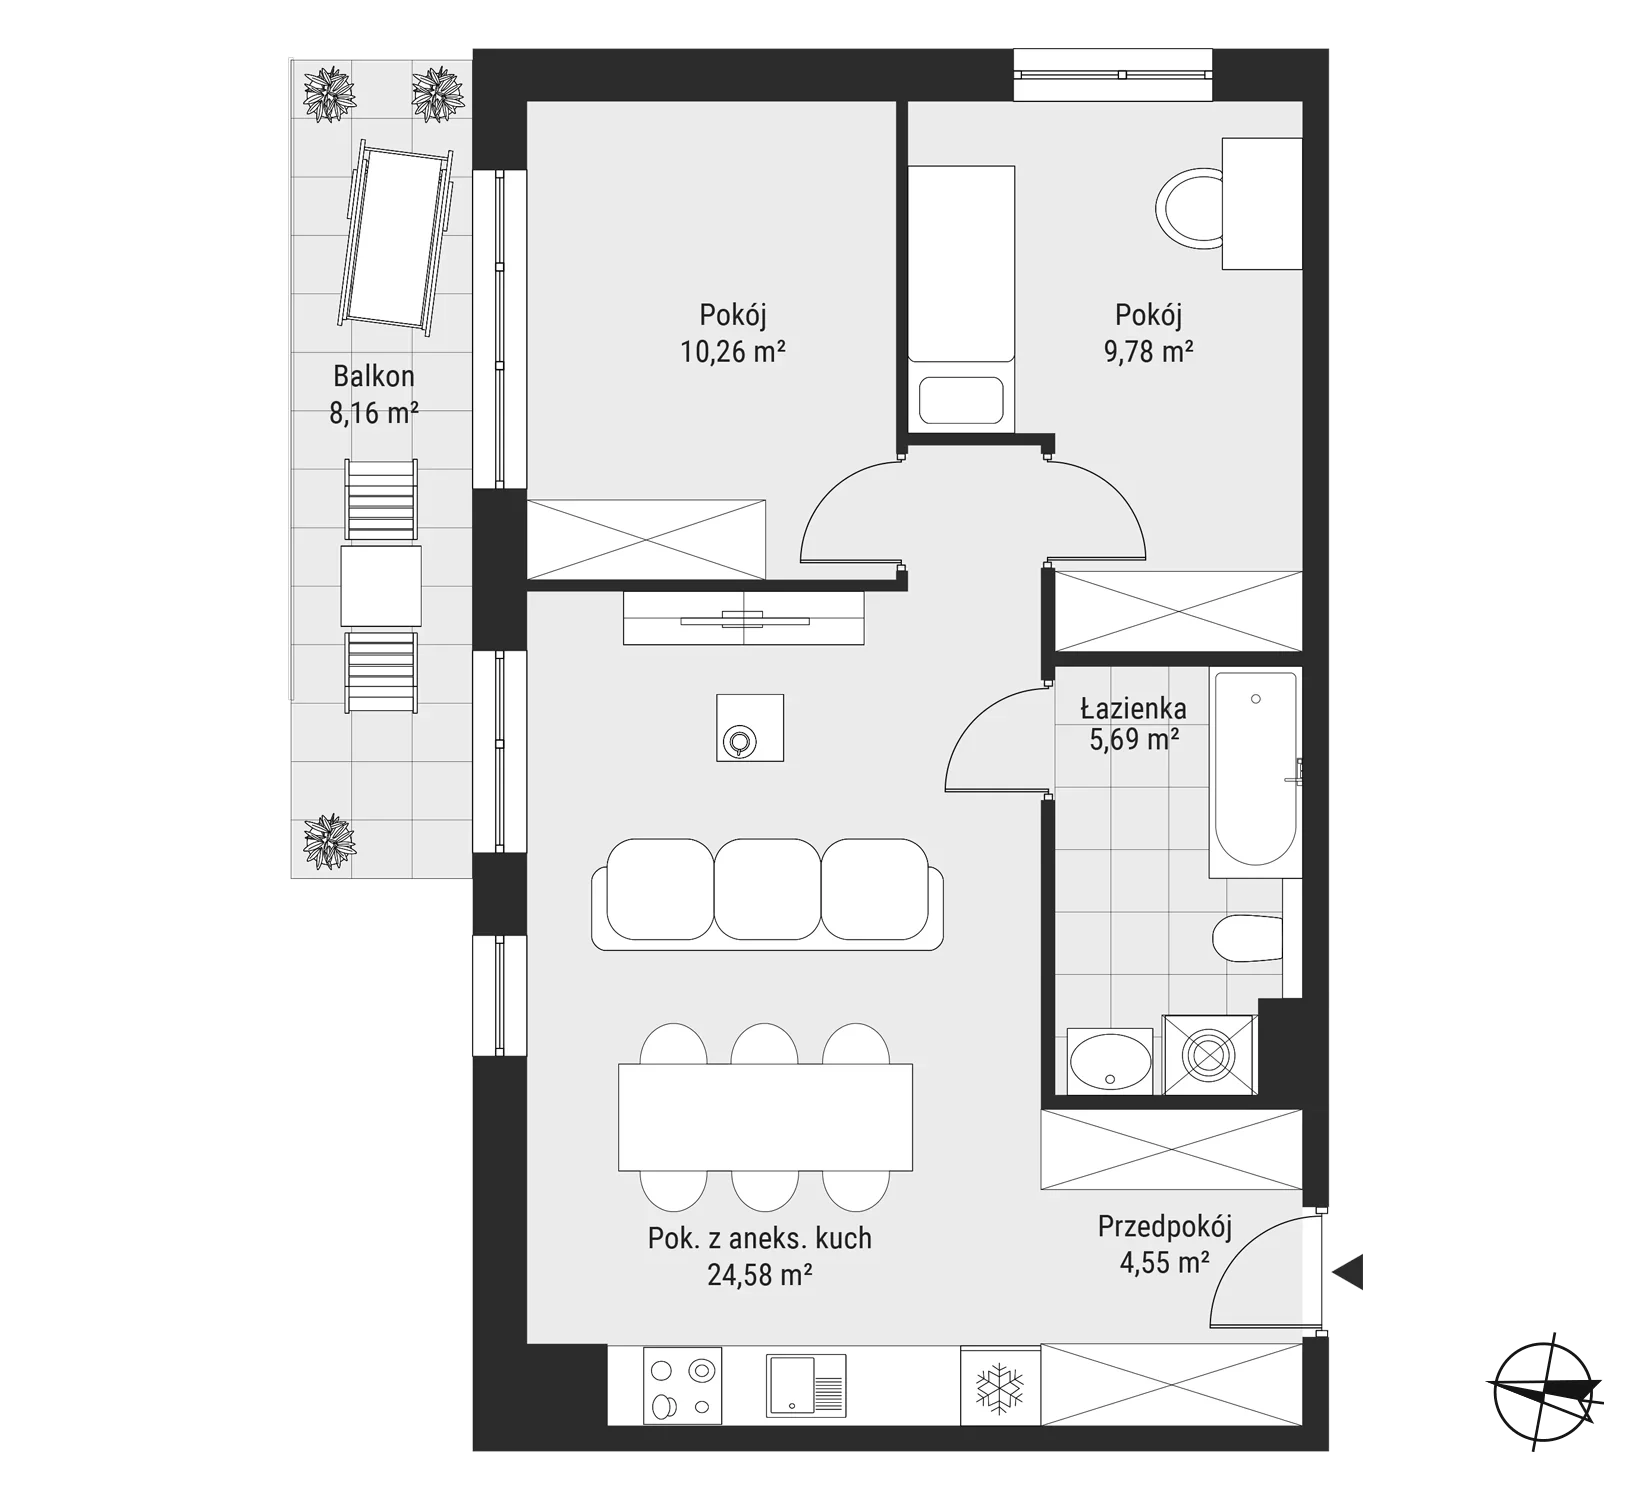 Mieszkanie 54,86 m², piętro 6, oferta nr mieszkanie 63, Bytkowska 3.0, Katowice, Wełnowiec-Józefowiec, ul. Bytkowska